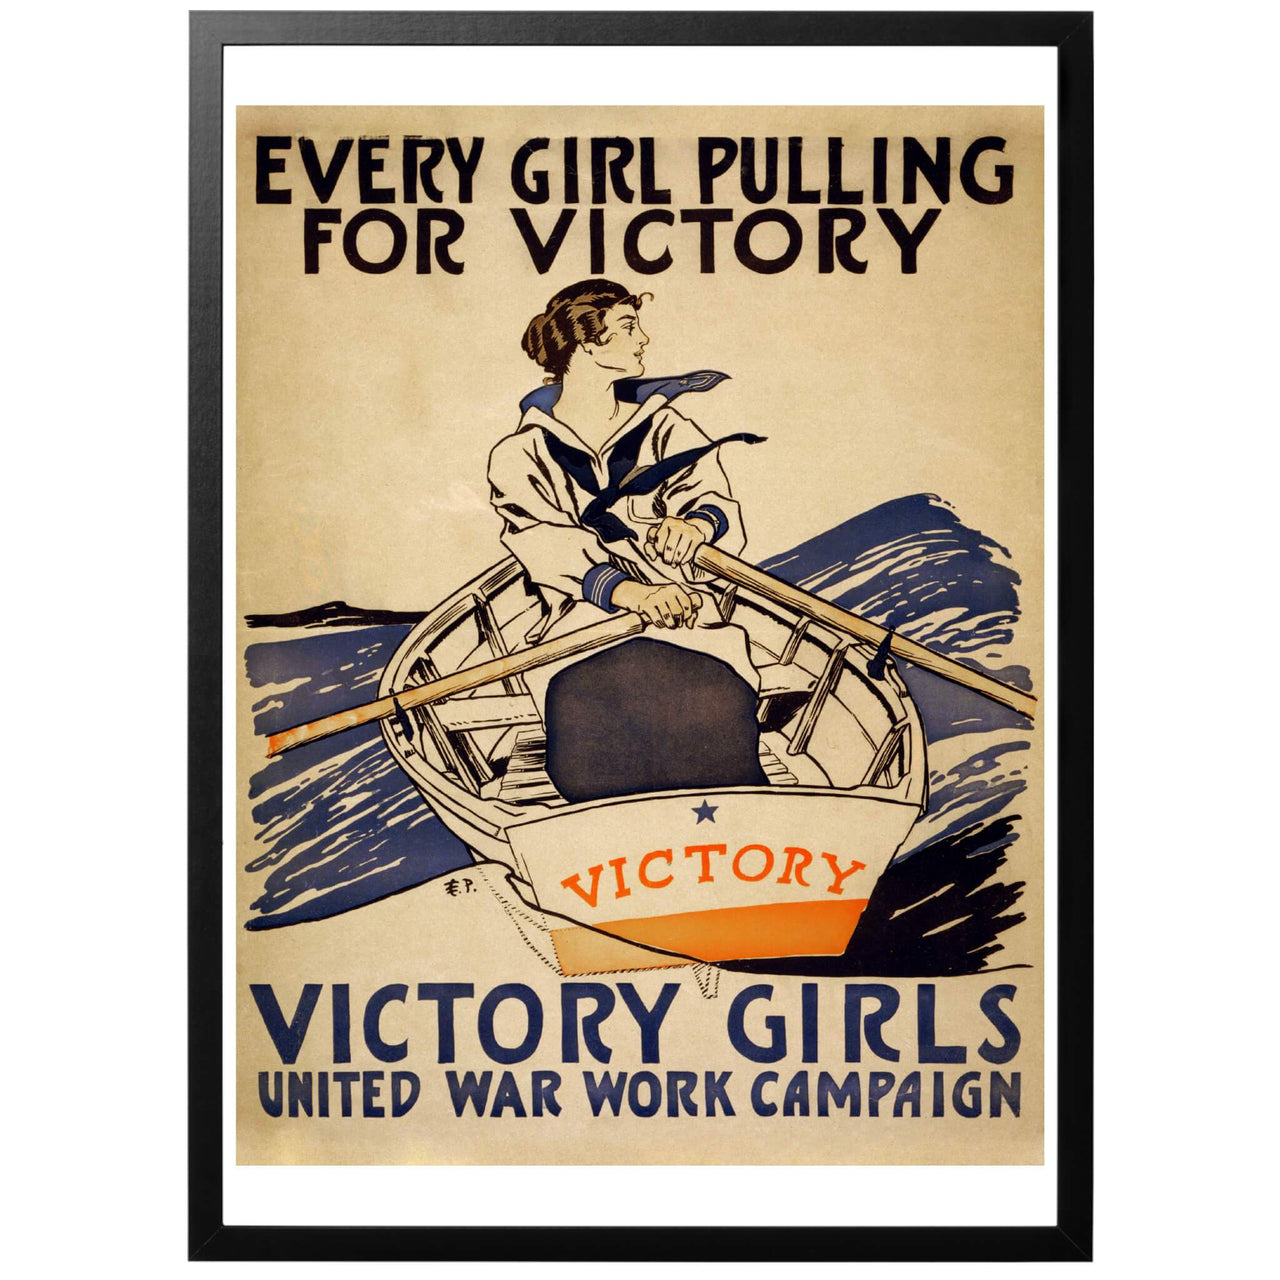 Every Girl Pulling For Victory. Victory Girls. United War Work Campaign - Alla flickor ror för seger. Amerikansk WWI affisch från 1918. Tryckt i vår egen anläggning i Sverige!